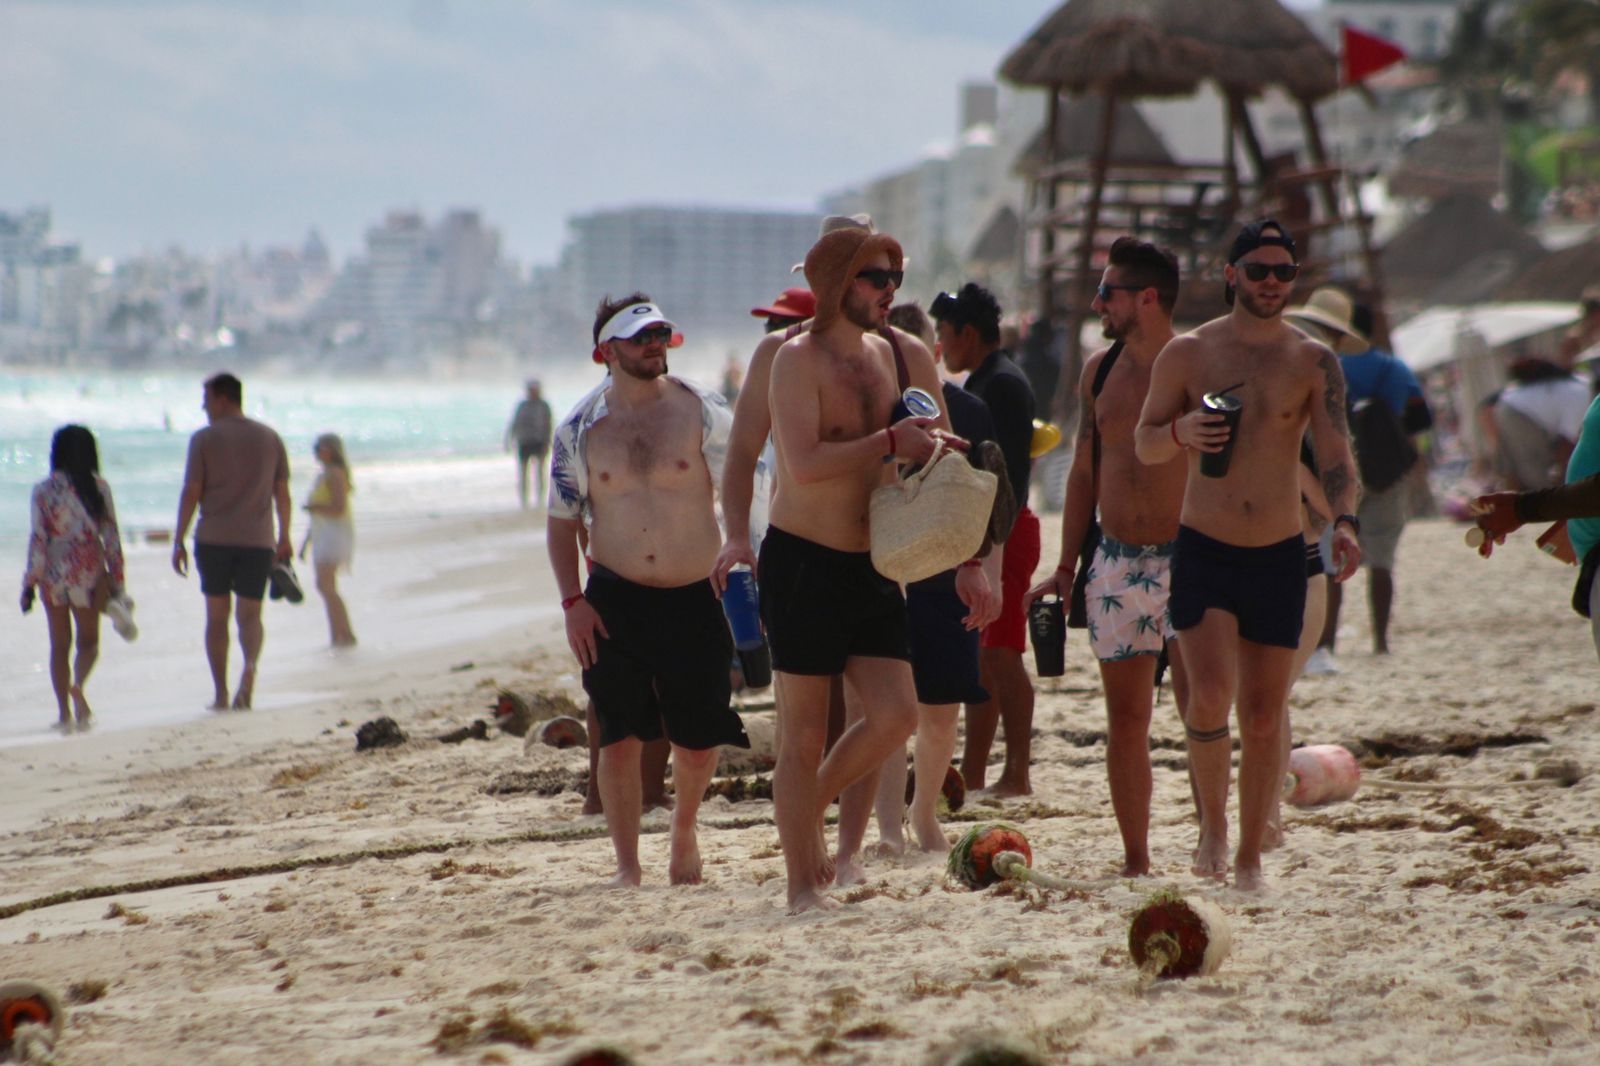 Advierten fuerte oleaje en Playas de Cancún; hay bandera roja: VIDEO